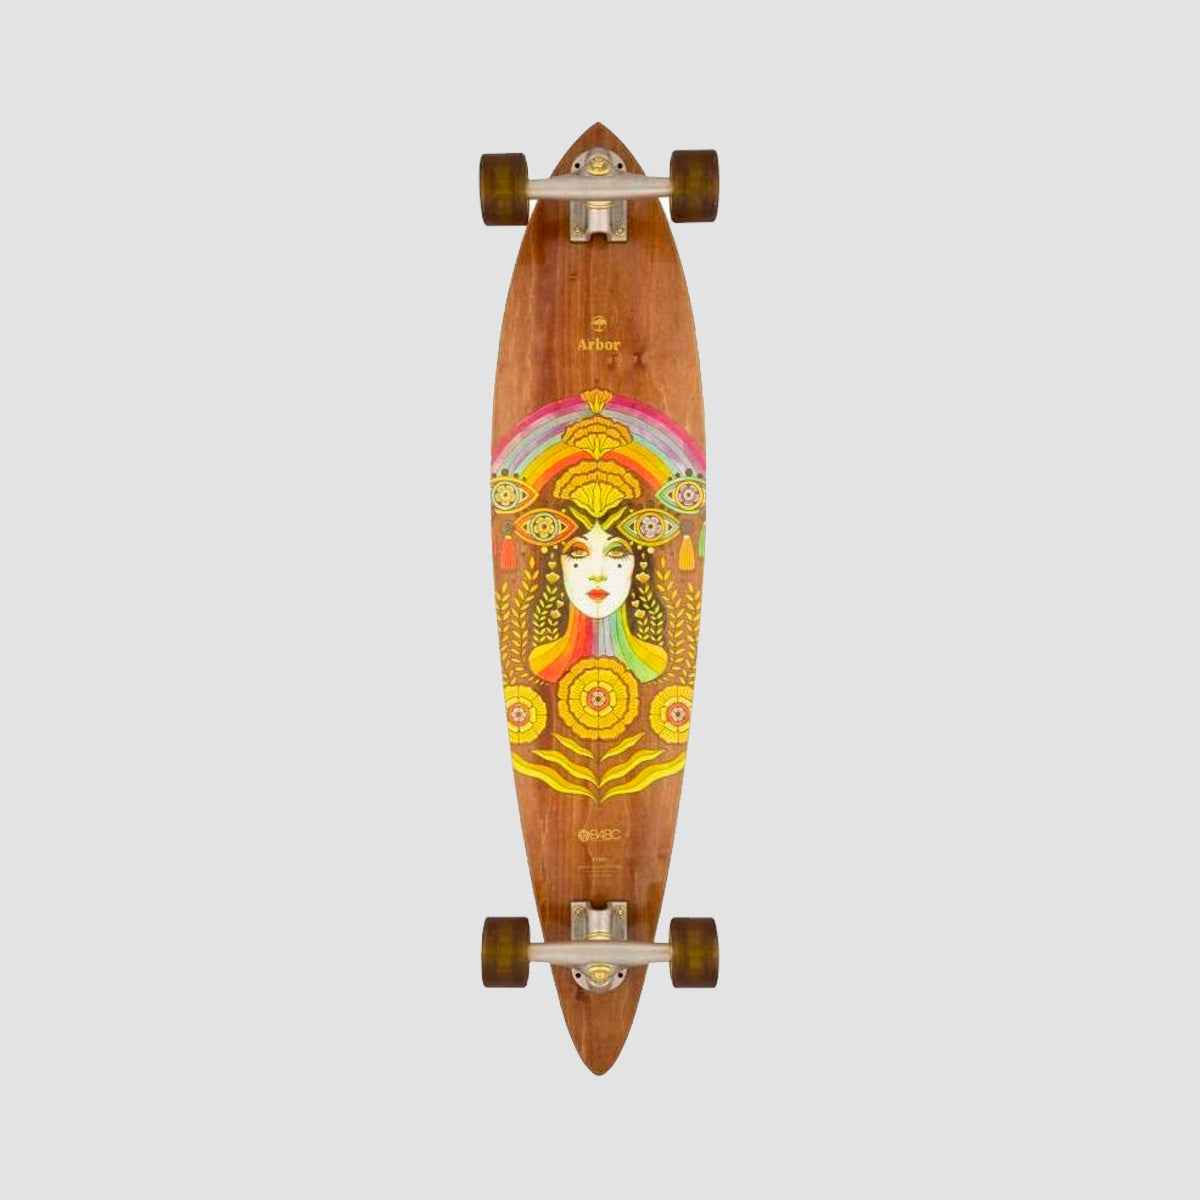 Arbor Solstice B4BC Fish Pintail Longboard Skateboard - 37"